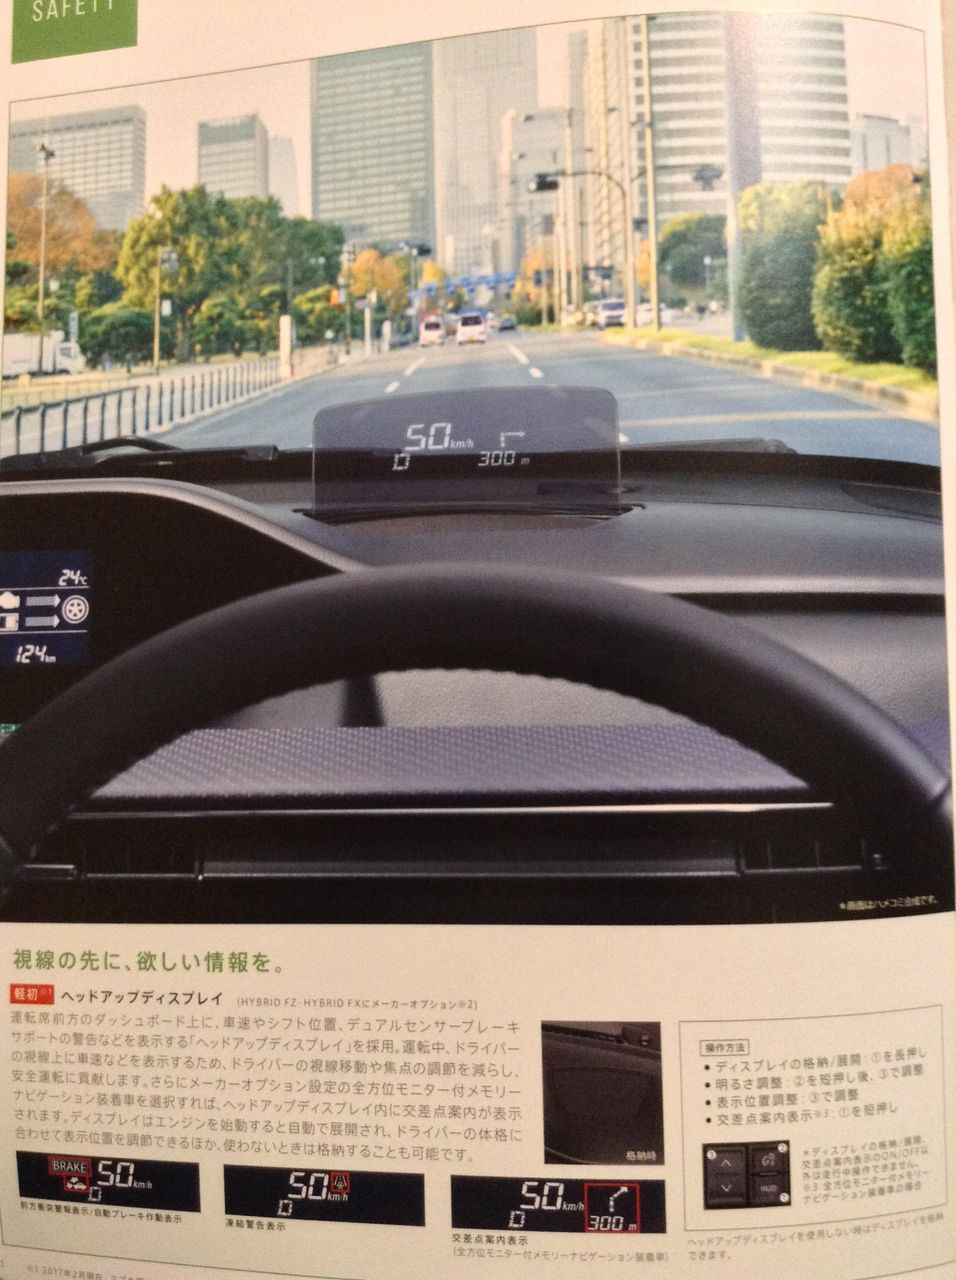 Next-gen-Suzuki-Wagon-R-brochure-leaked_11